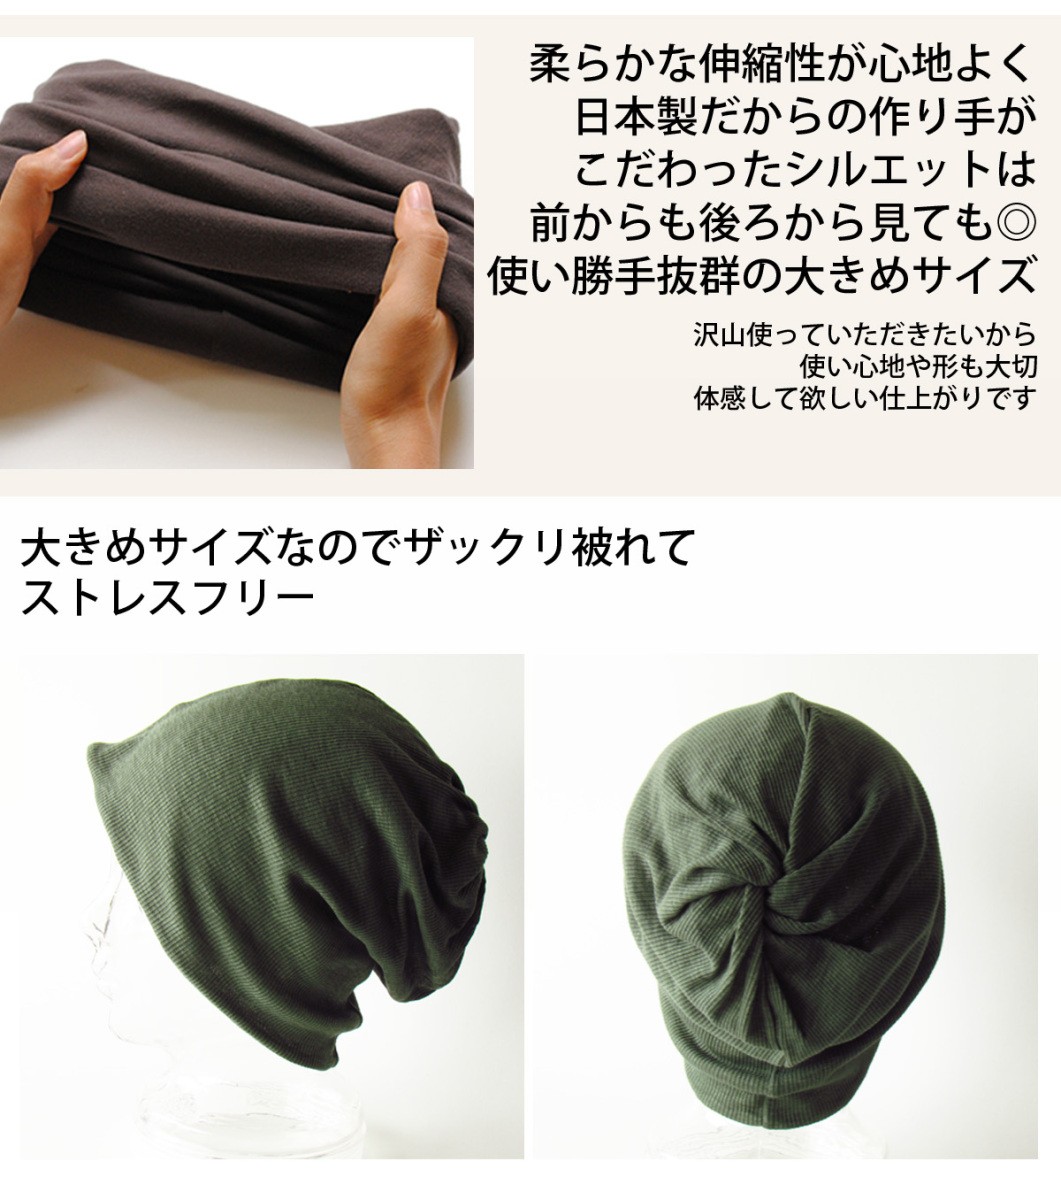  защита горла "neck warmer" мужской женский медицинская помощь для шляпа .... шляпа хлопок 